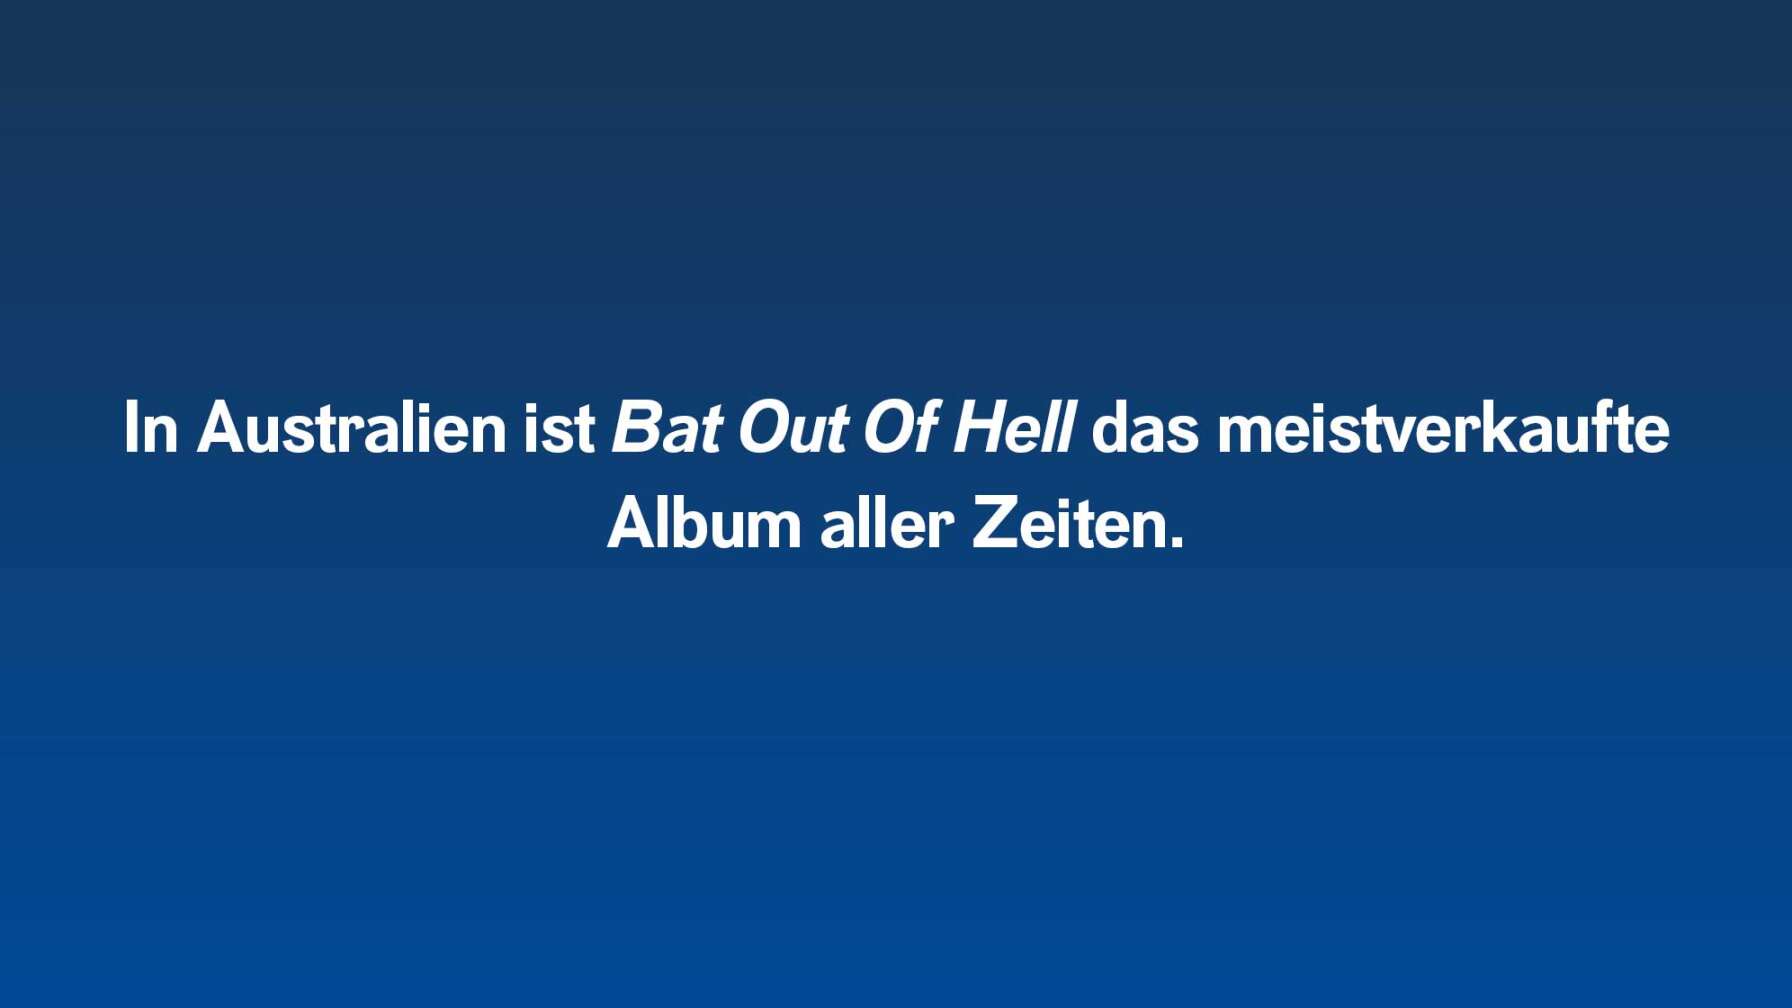 In Australien ist Bat Out Of Hell das meistverkaufte Album aller Zeiten.